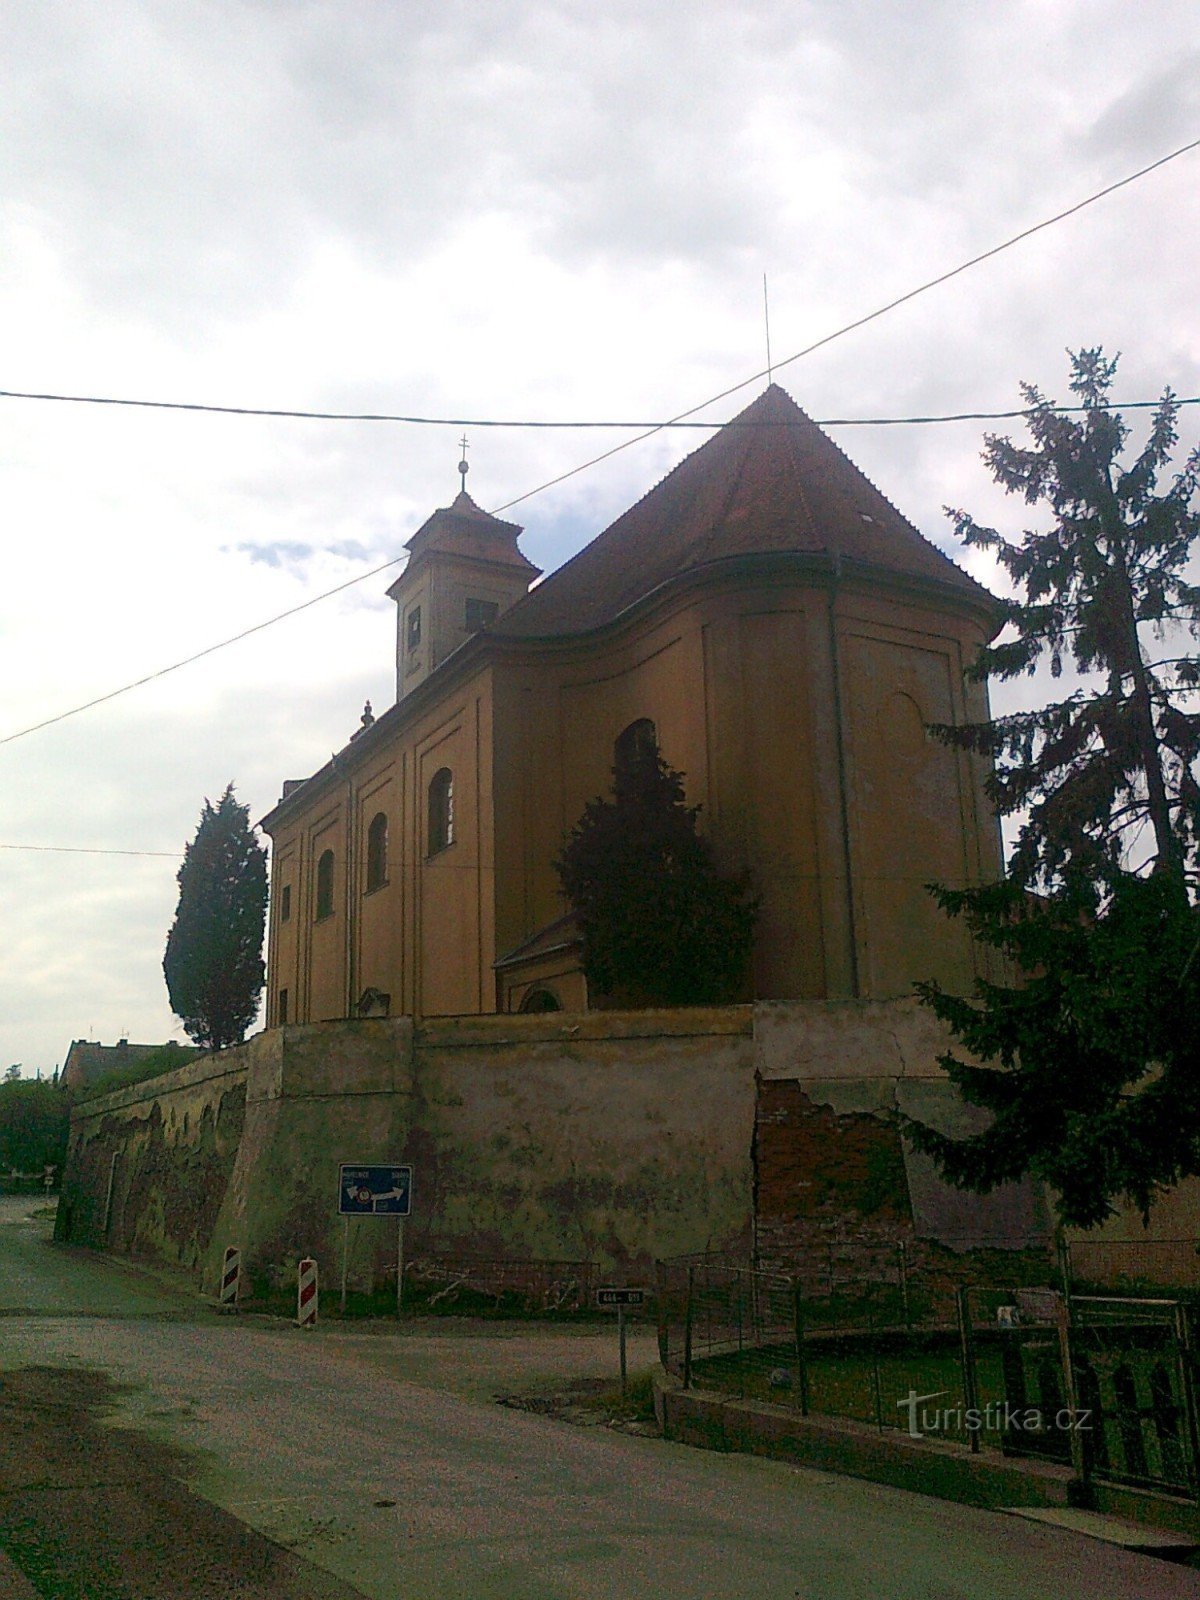 partea din spate a bisericii din partea străzii Zámecká